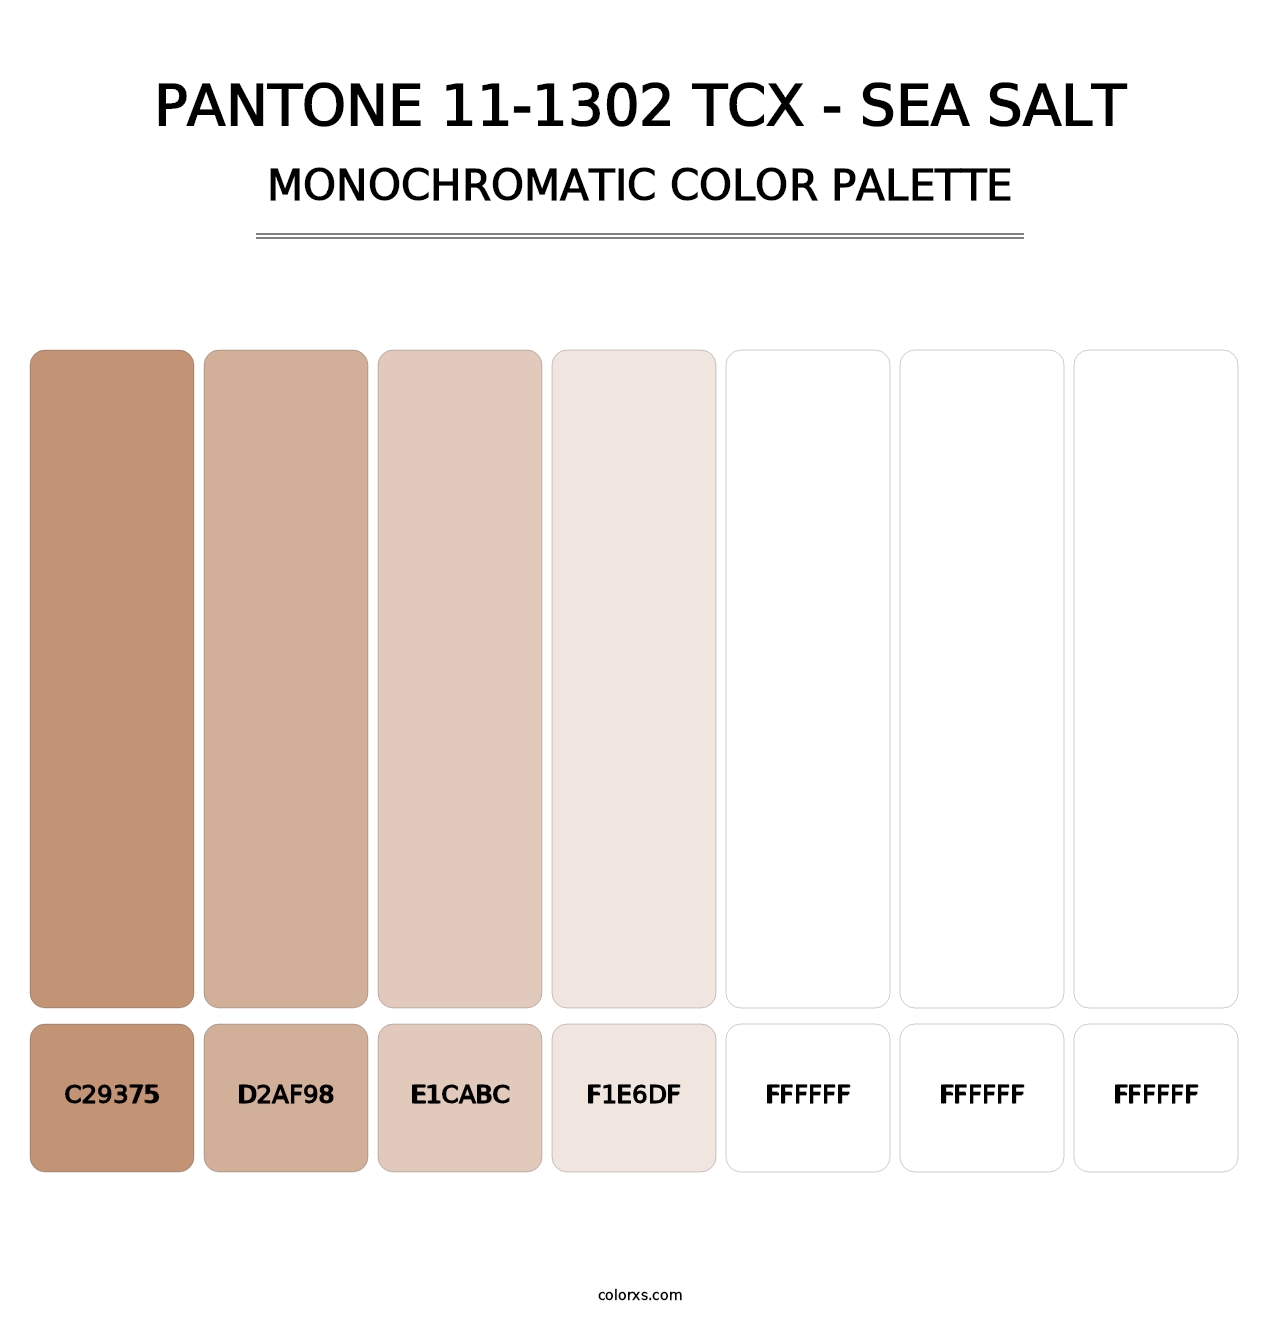 PANTONE 11-1302 TCX - Sea Salt - Monochromatic Color Palette